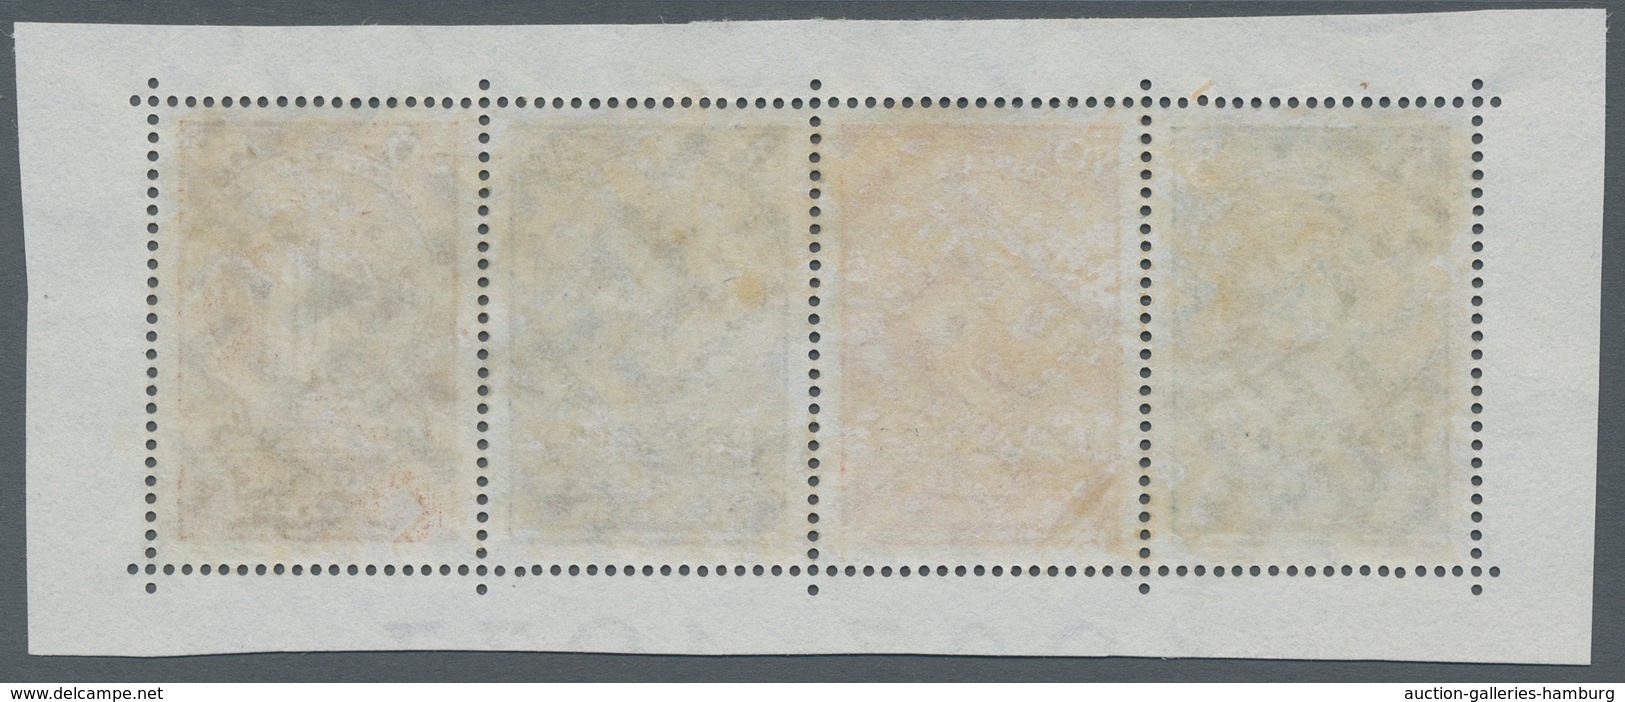 Deutsches Reich - 3. Reich: 1933, "Nothilfe", Einzelmarken aus Block je mit Zusatzfrankatur auf zwei